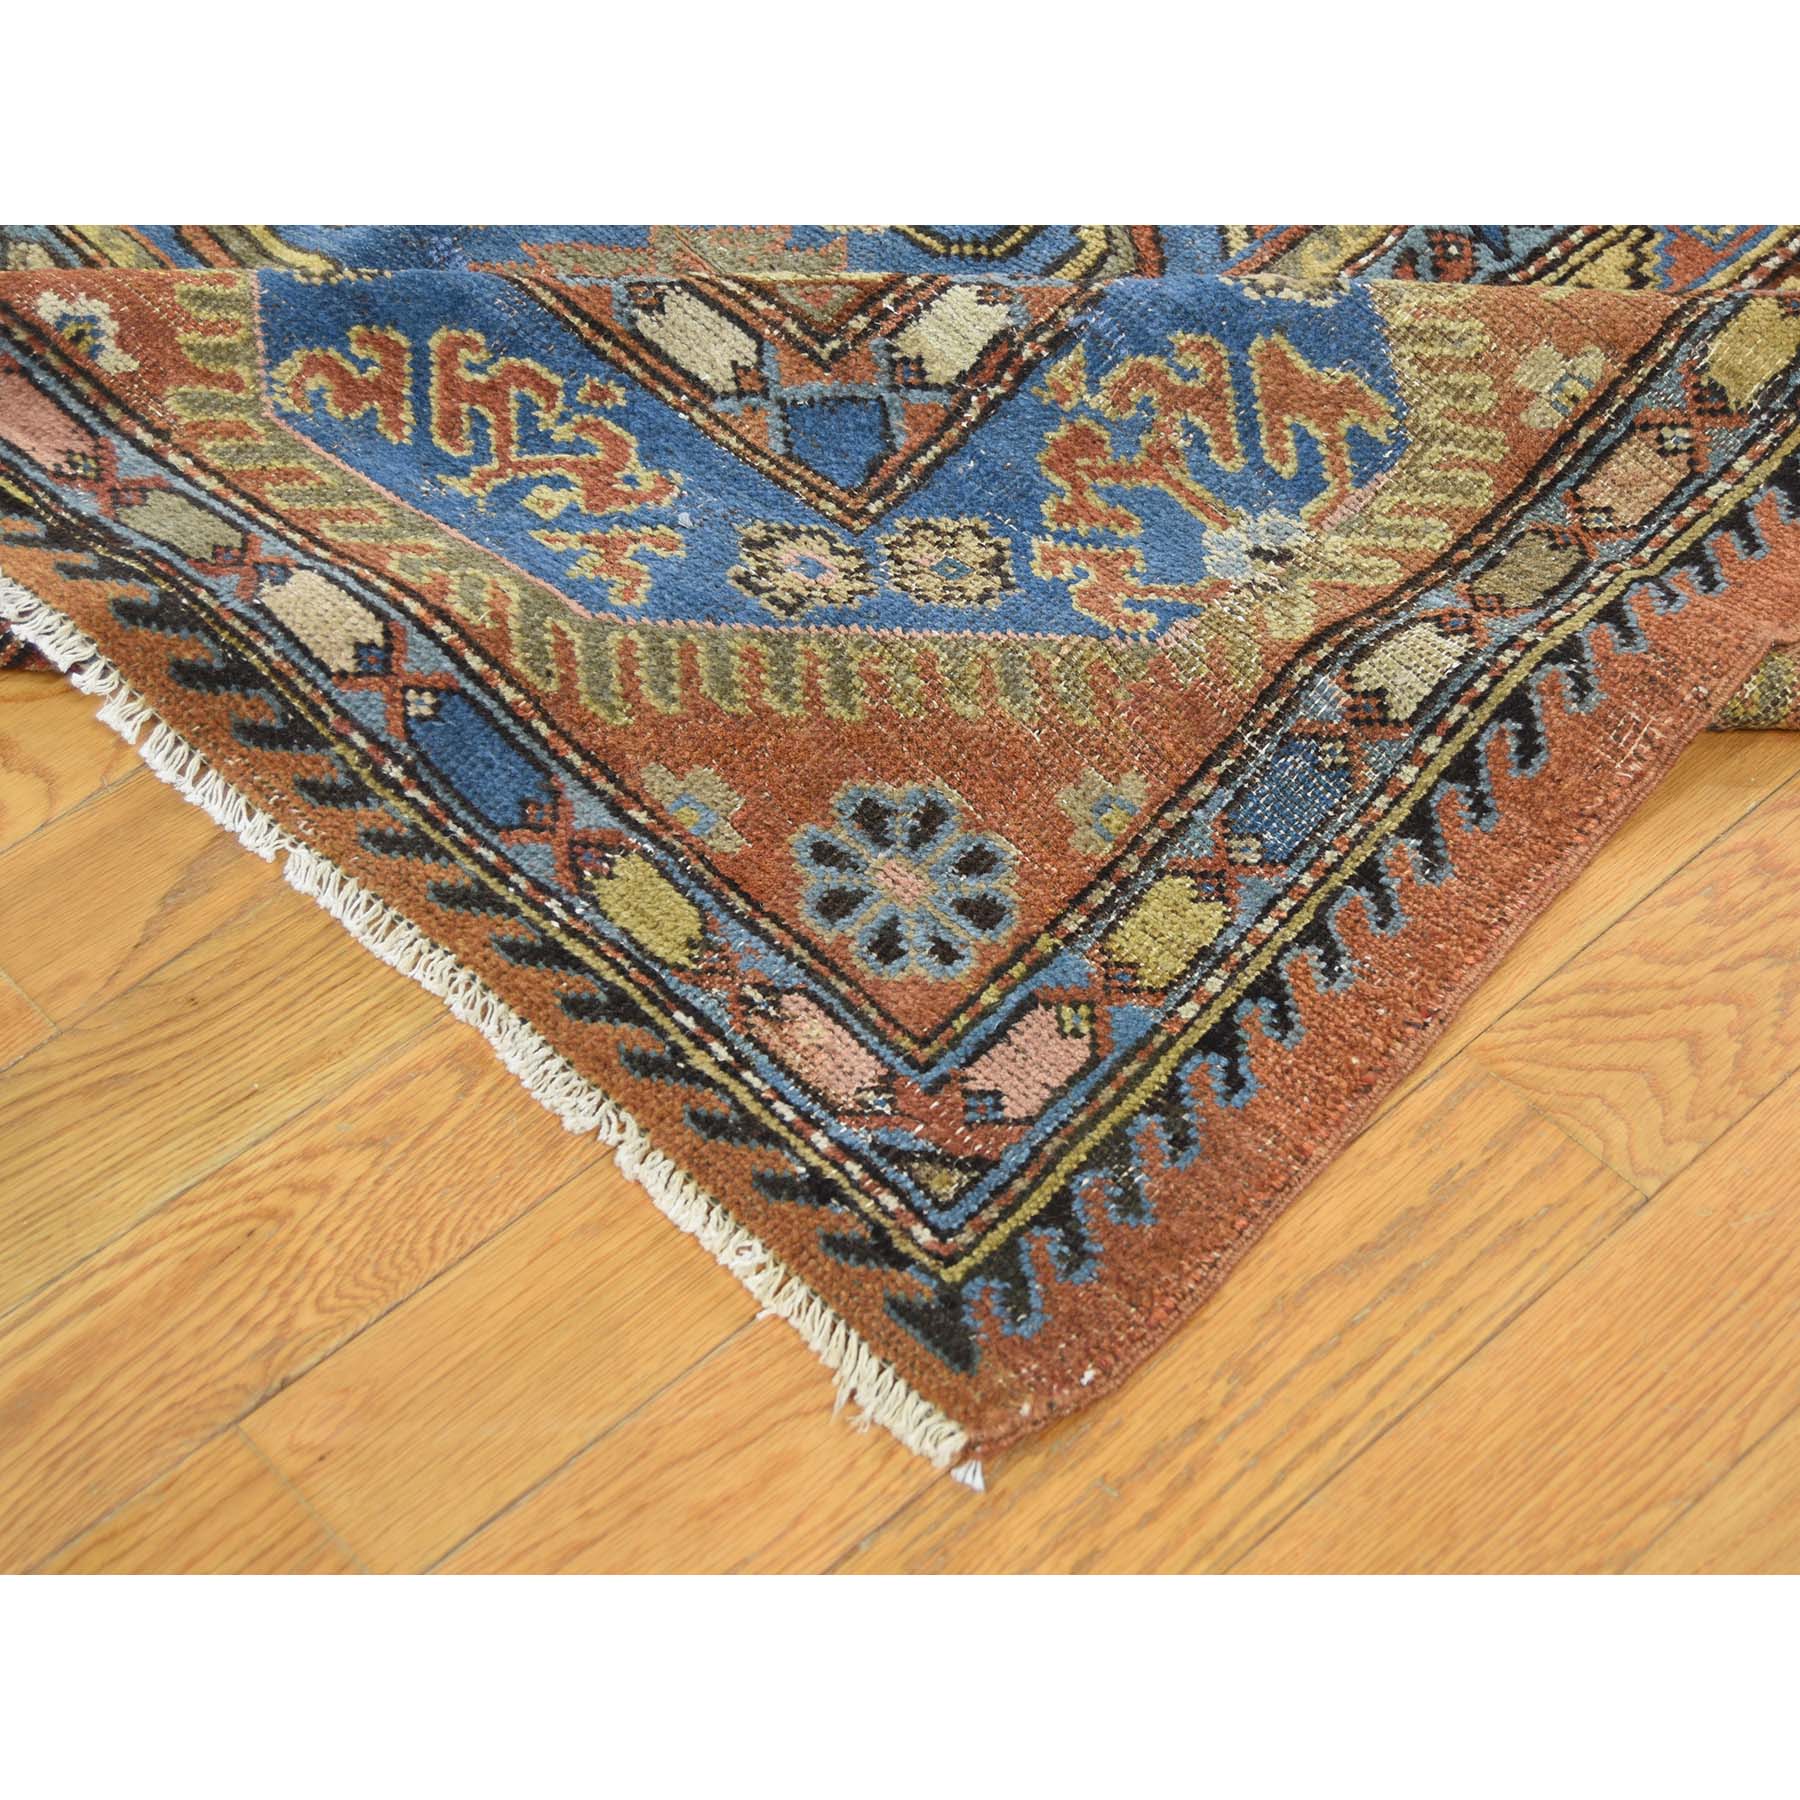 9-6 x11-9  Antique Samarkand With Bakshaish Design Oriental Rug 